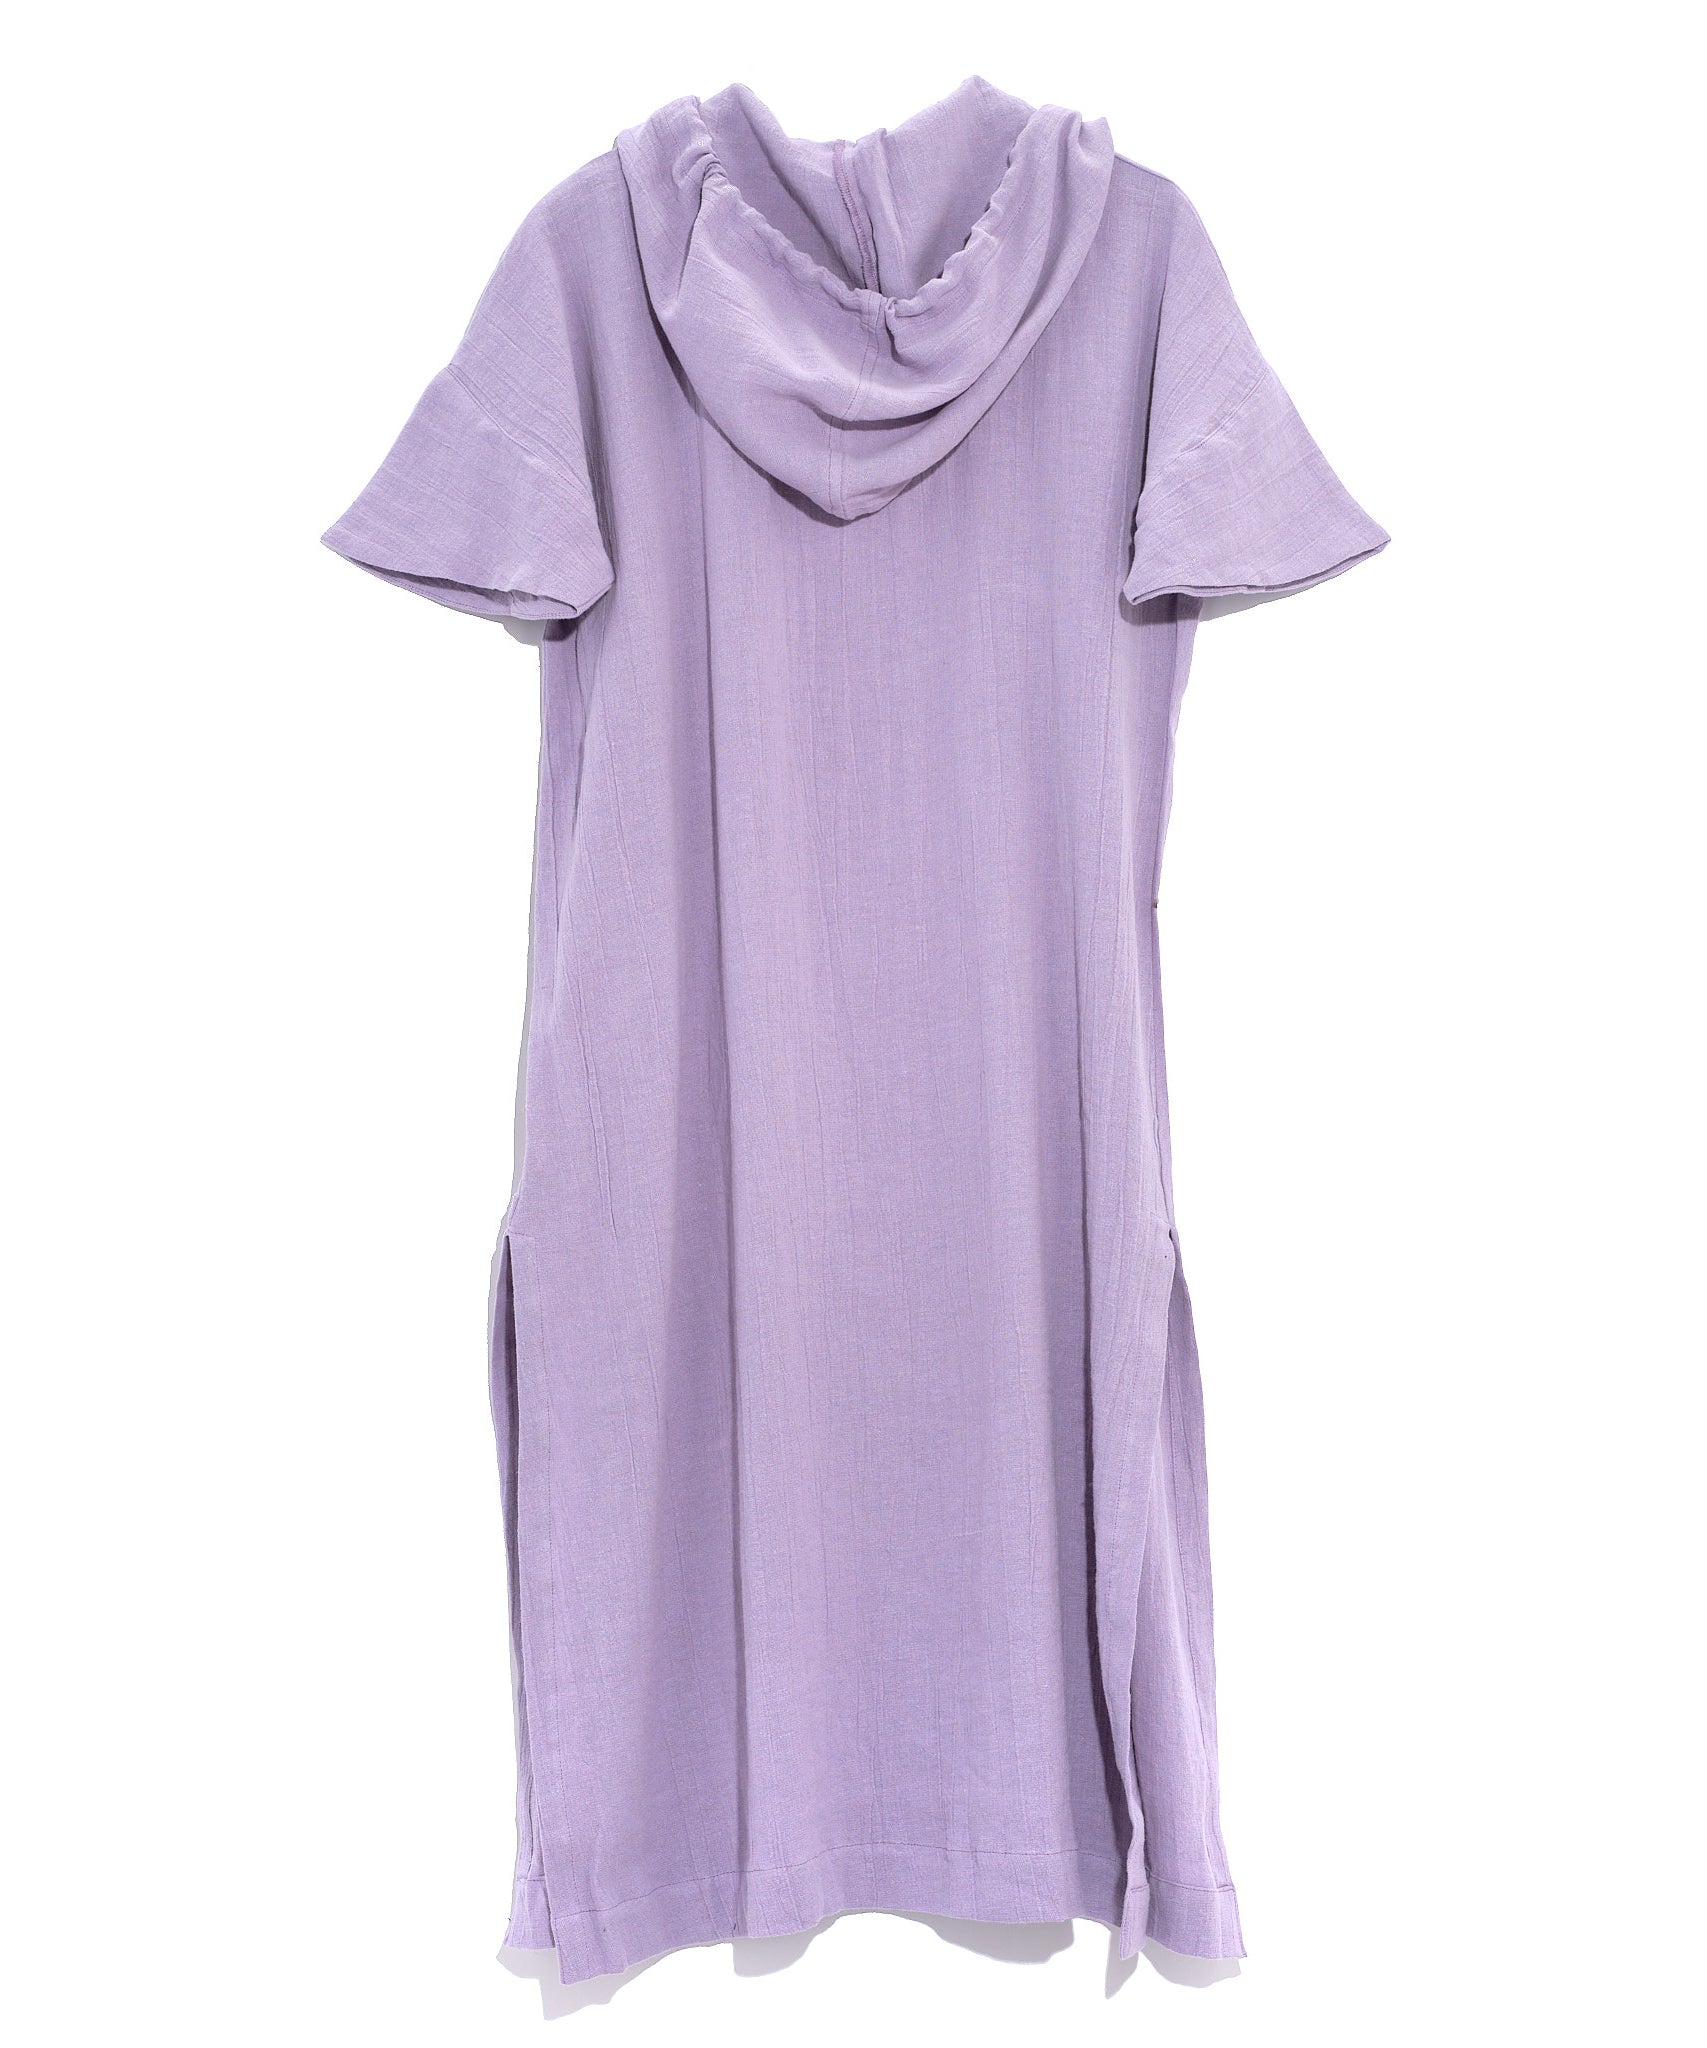 Meridian Hooded Caftan in color Lavender Mist